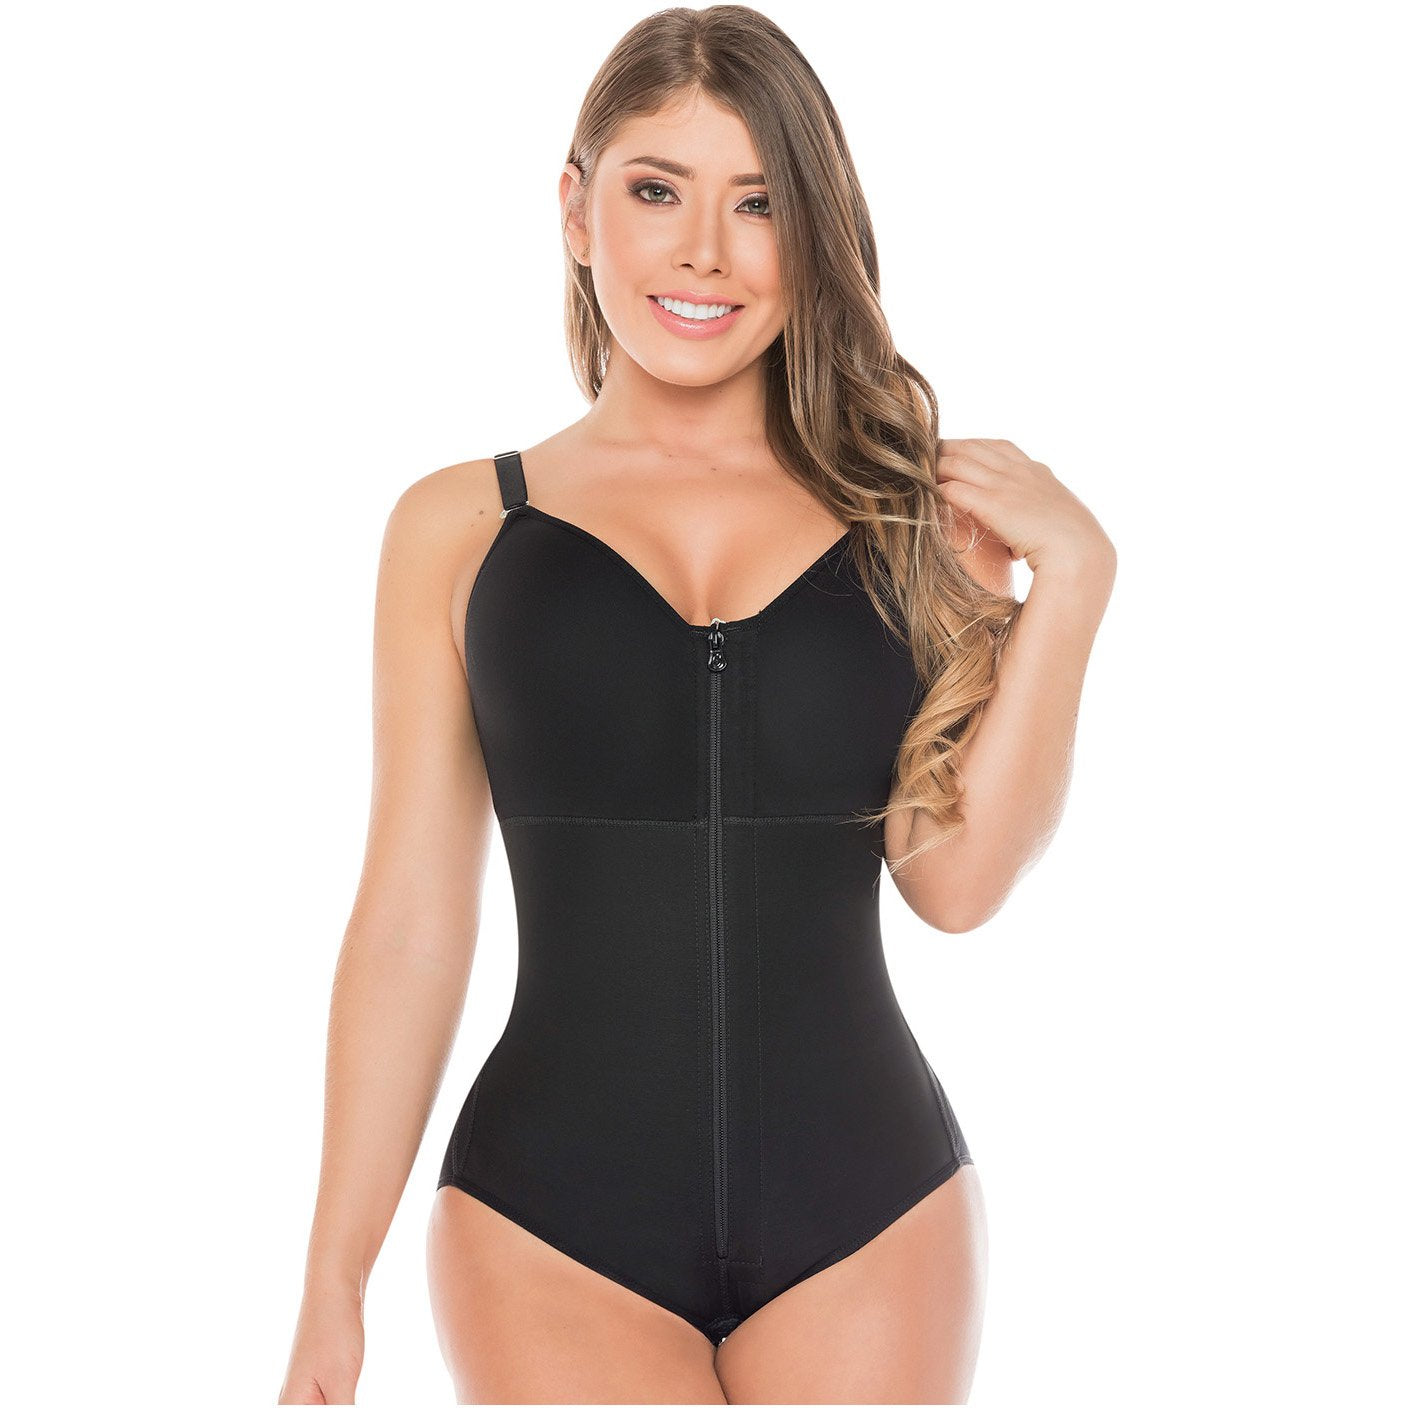 Fajas Salome 0517 Full Bodysuit Full Body Shaper for Women